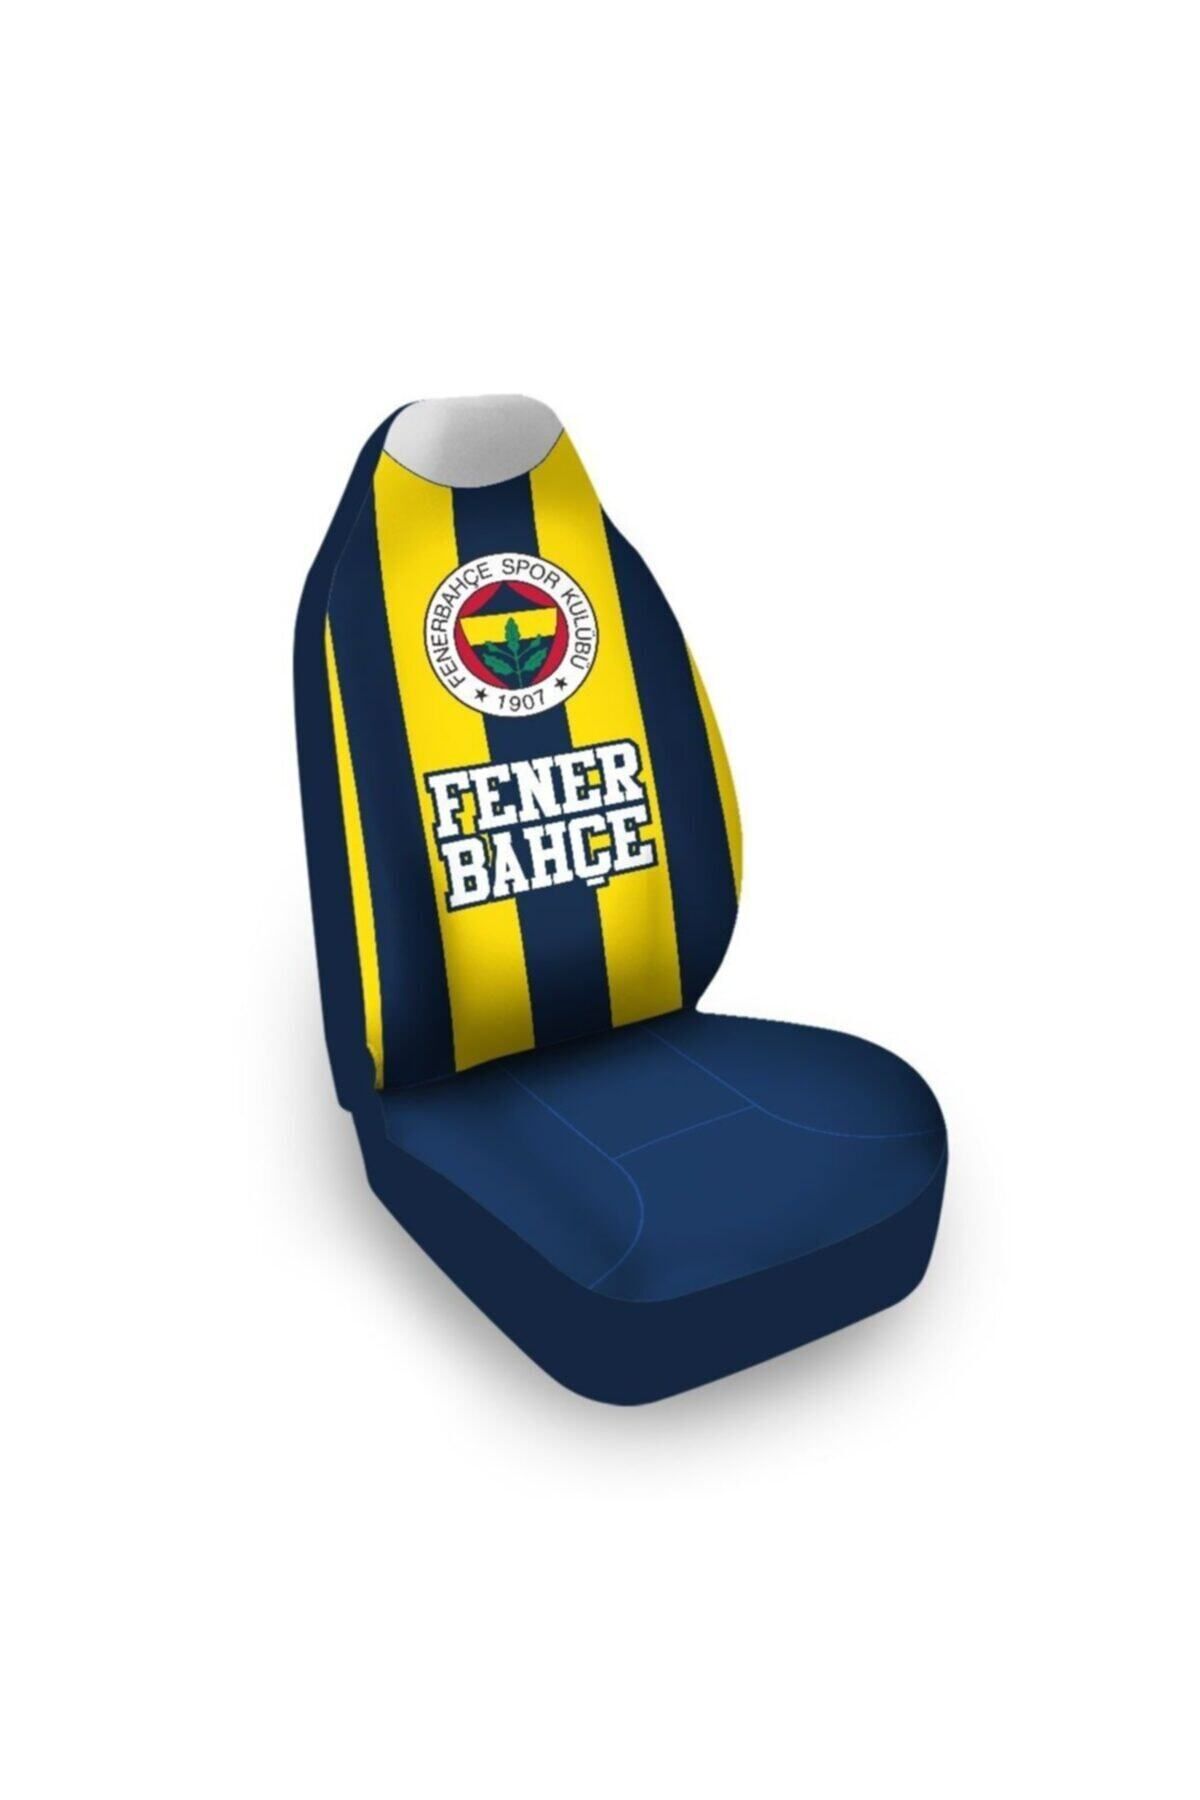 Fenerbahçe Lisanslı Çubuklu Araba Koltuk Kılıfı